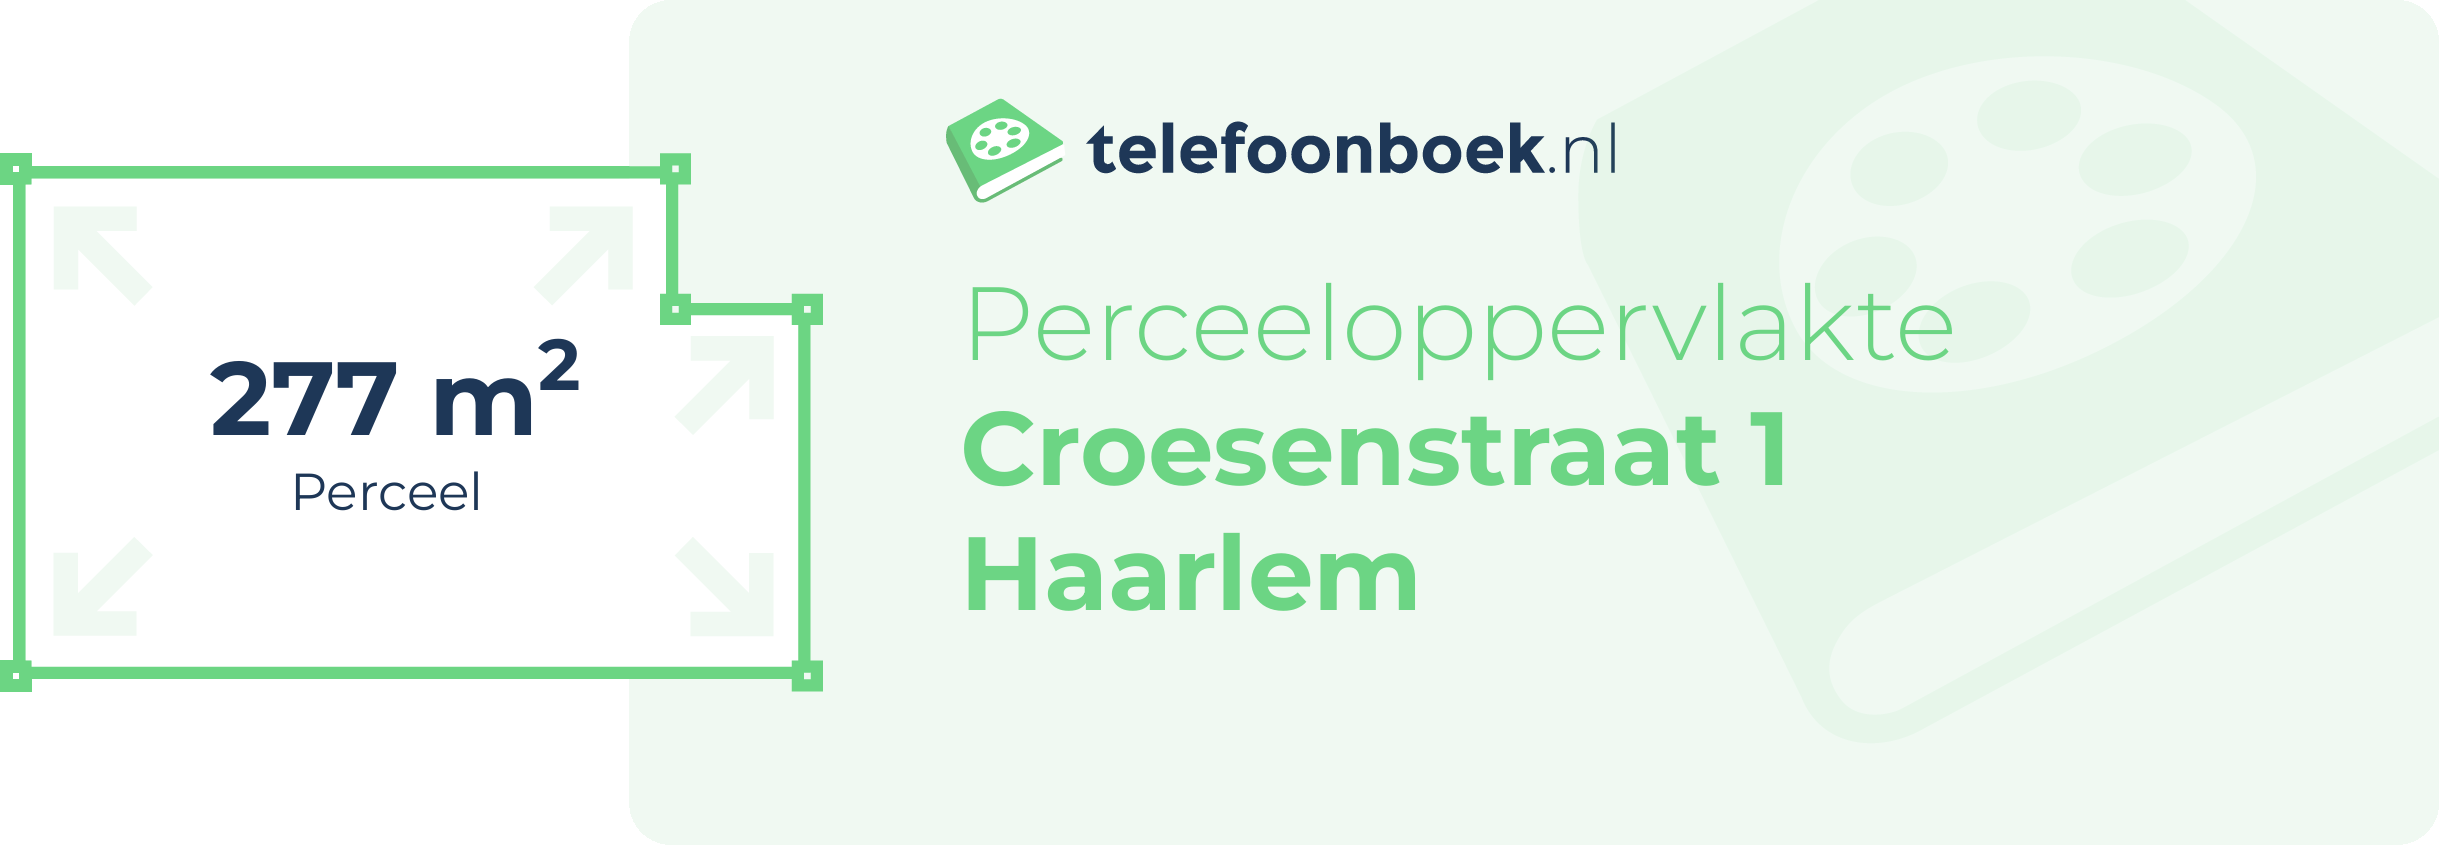 Perceeloppervlakte Croesenstraat 1 Haarlem